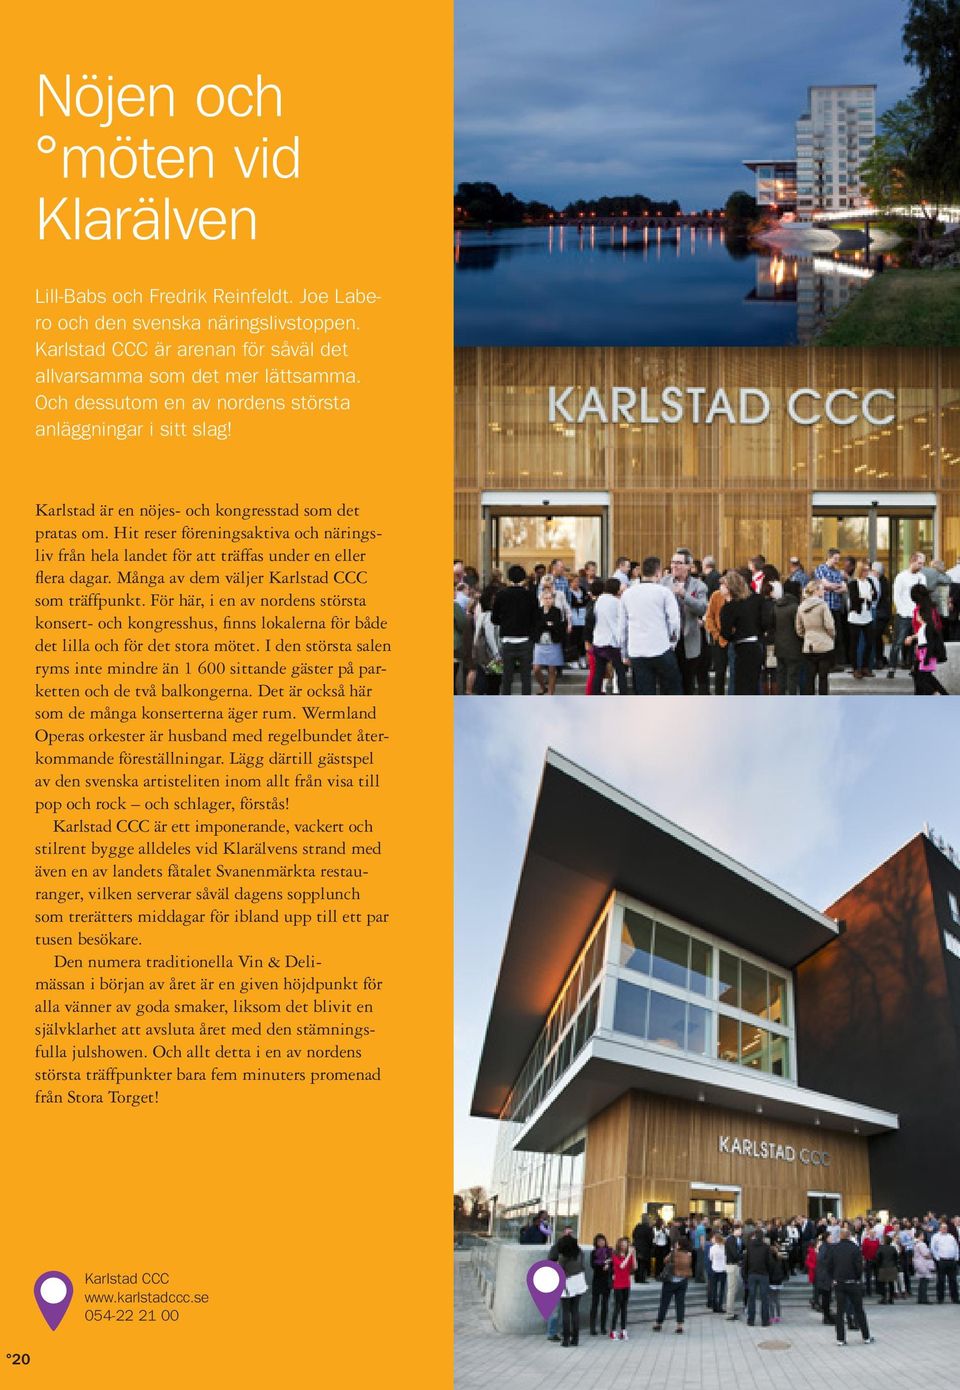 Hit reser föreningsaktiva och näringsliv från hela landet för att träffas under en eller flera dagar. Många av dem väljer Karlstad CCC som träffpunkt.